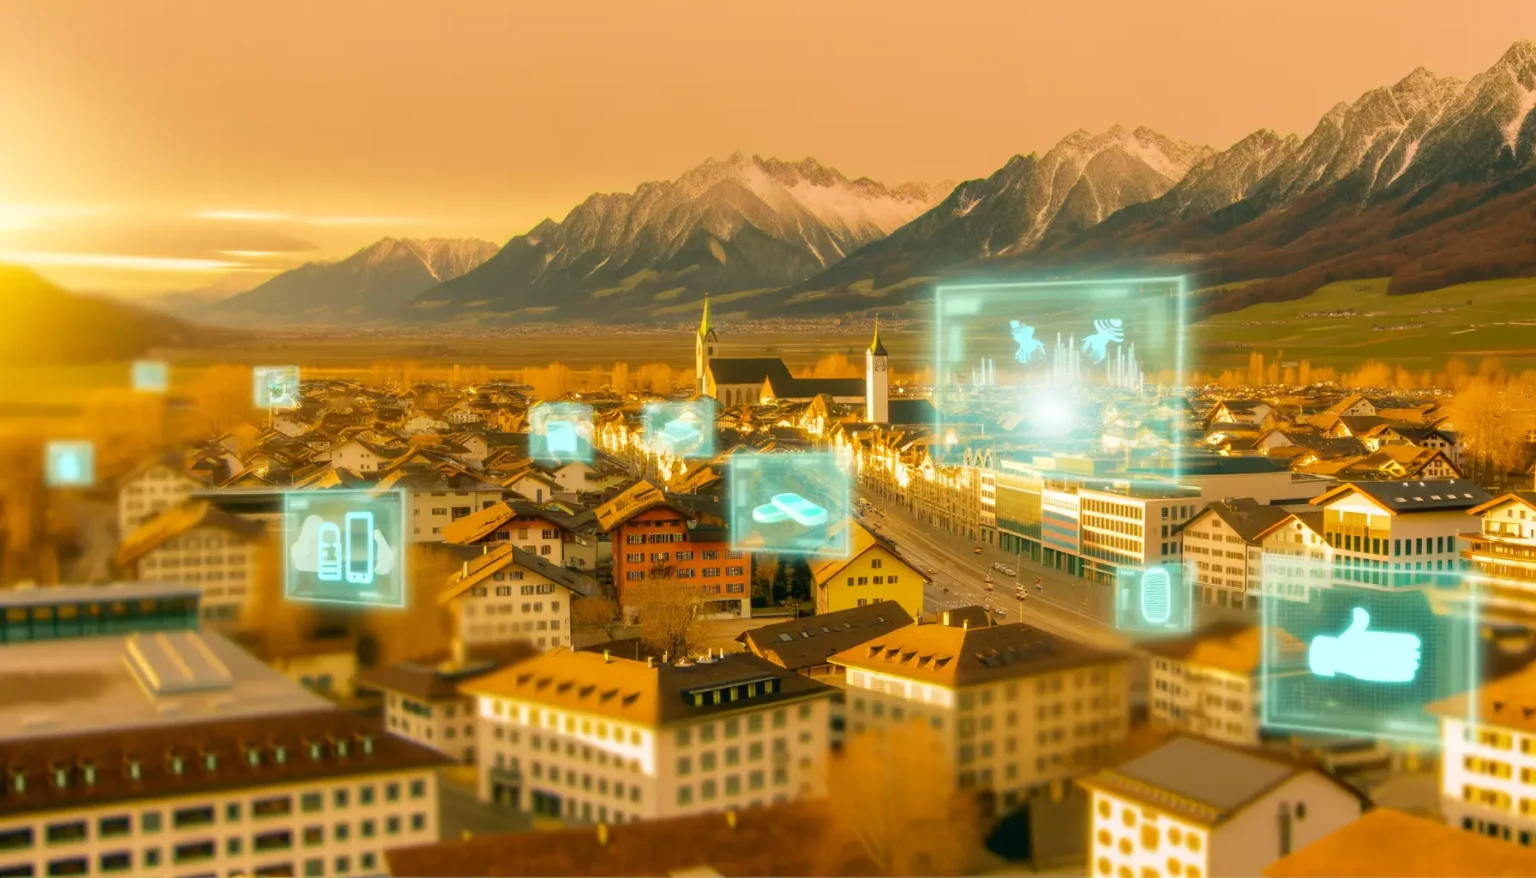 Eine Stadt im Abendlicht mit verschneiten Bergen im Hintergrund. Über der Stadt sind futuristische, leuchtende Symbole und Grafiken zu sehen, die auf eine digitale oder Smart-City-Thematik hinweisen.